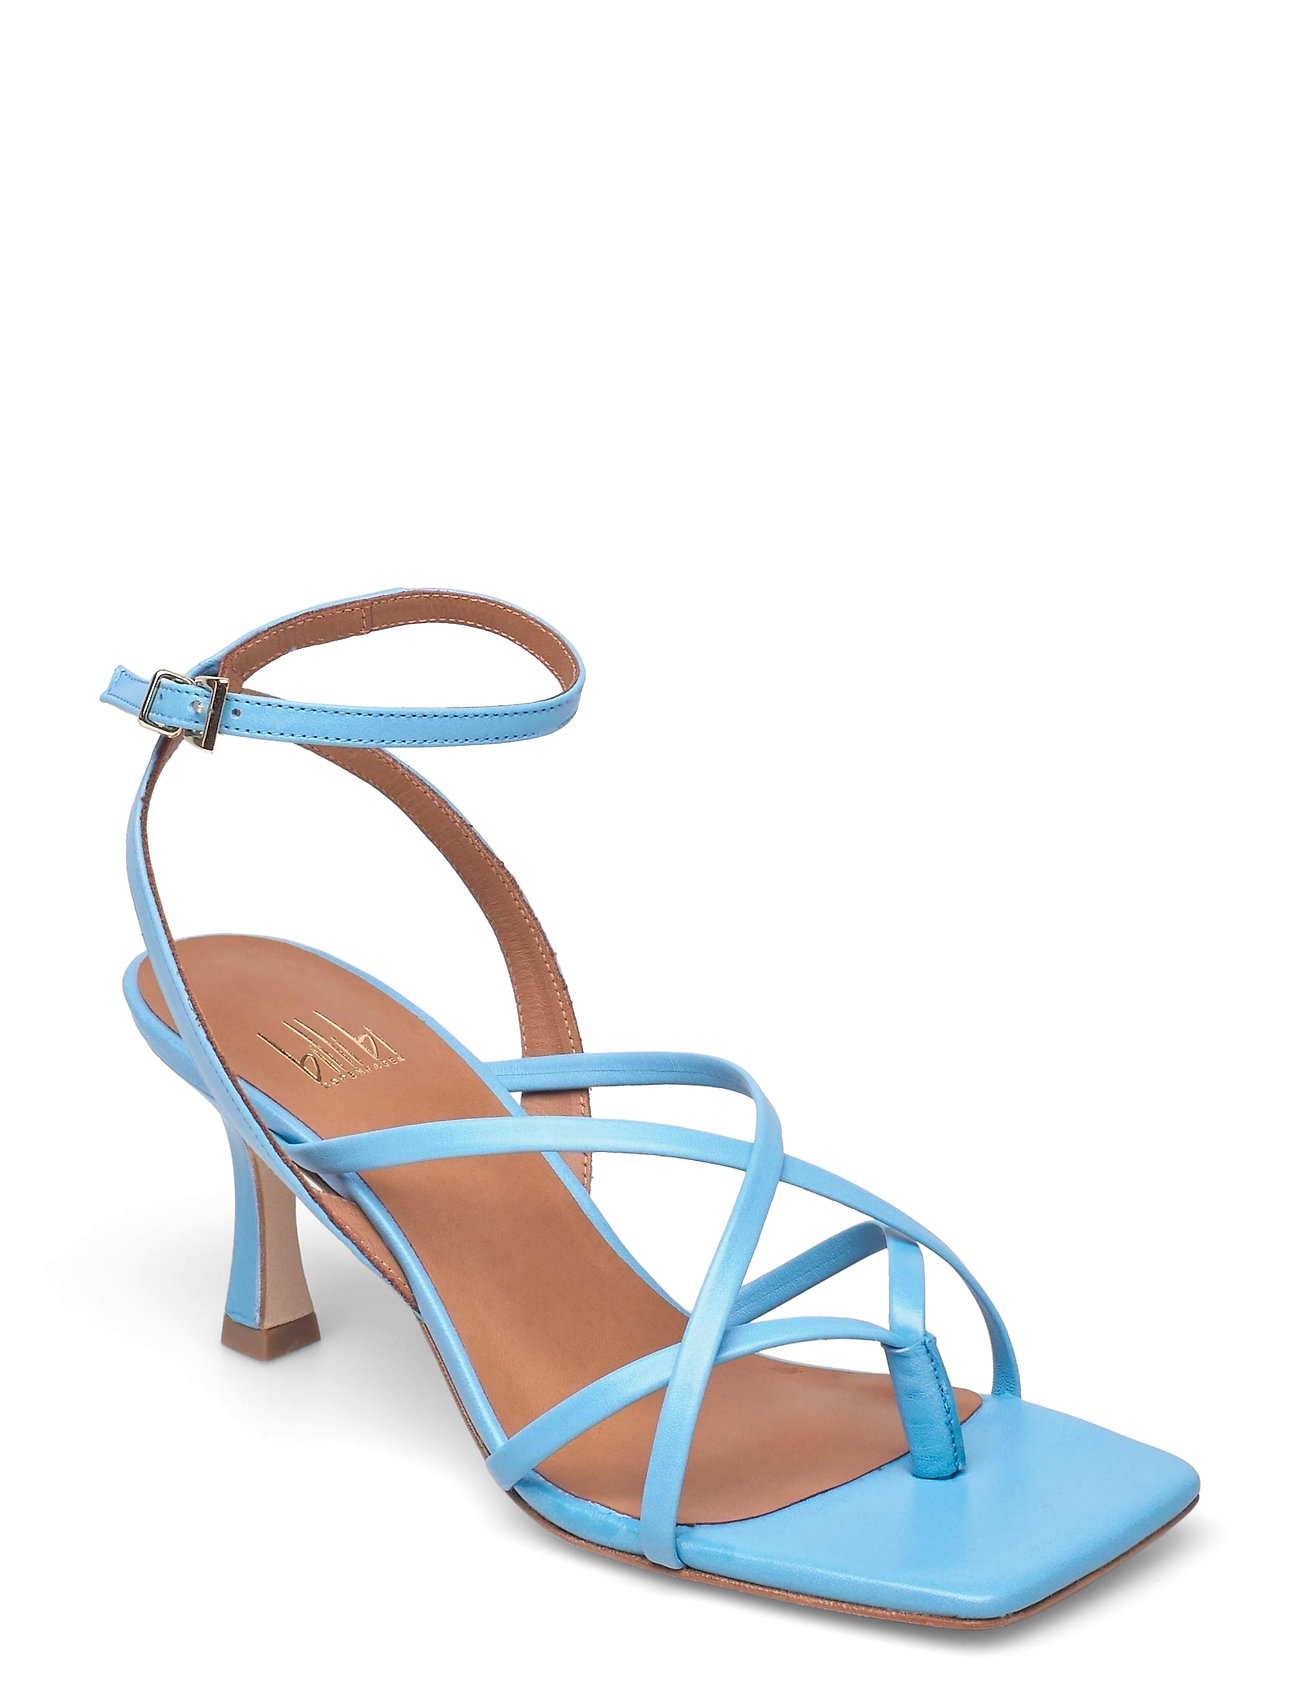 Bi højhælede sandaler – Sandals 2639 Sandal Med Hæl Blå Billi Bi til dame i OFF WHITE NAPPA 73 - Pashion.dk